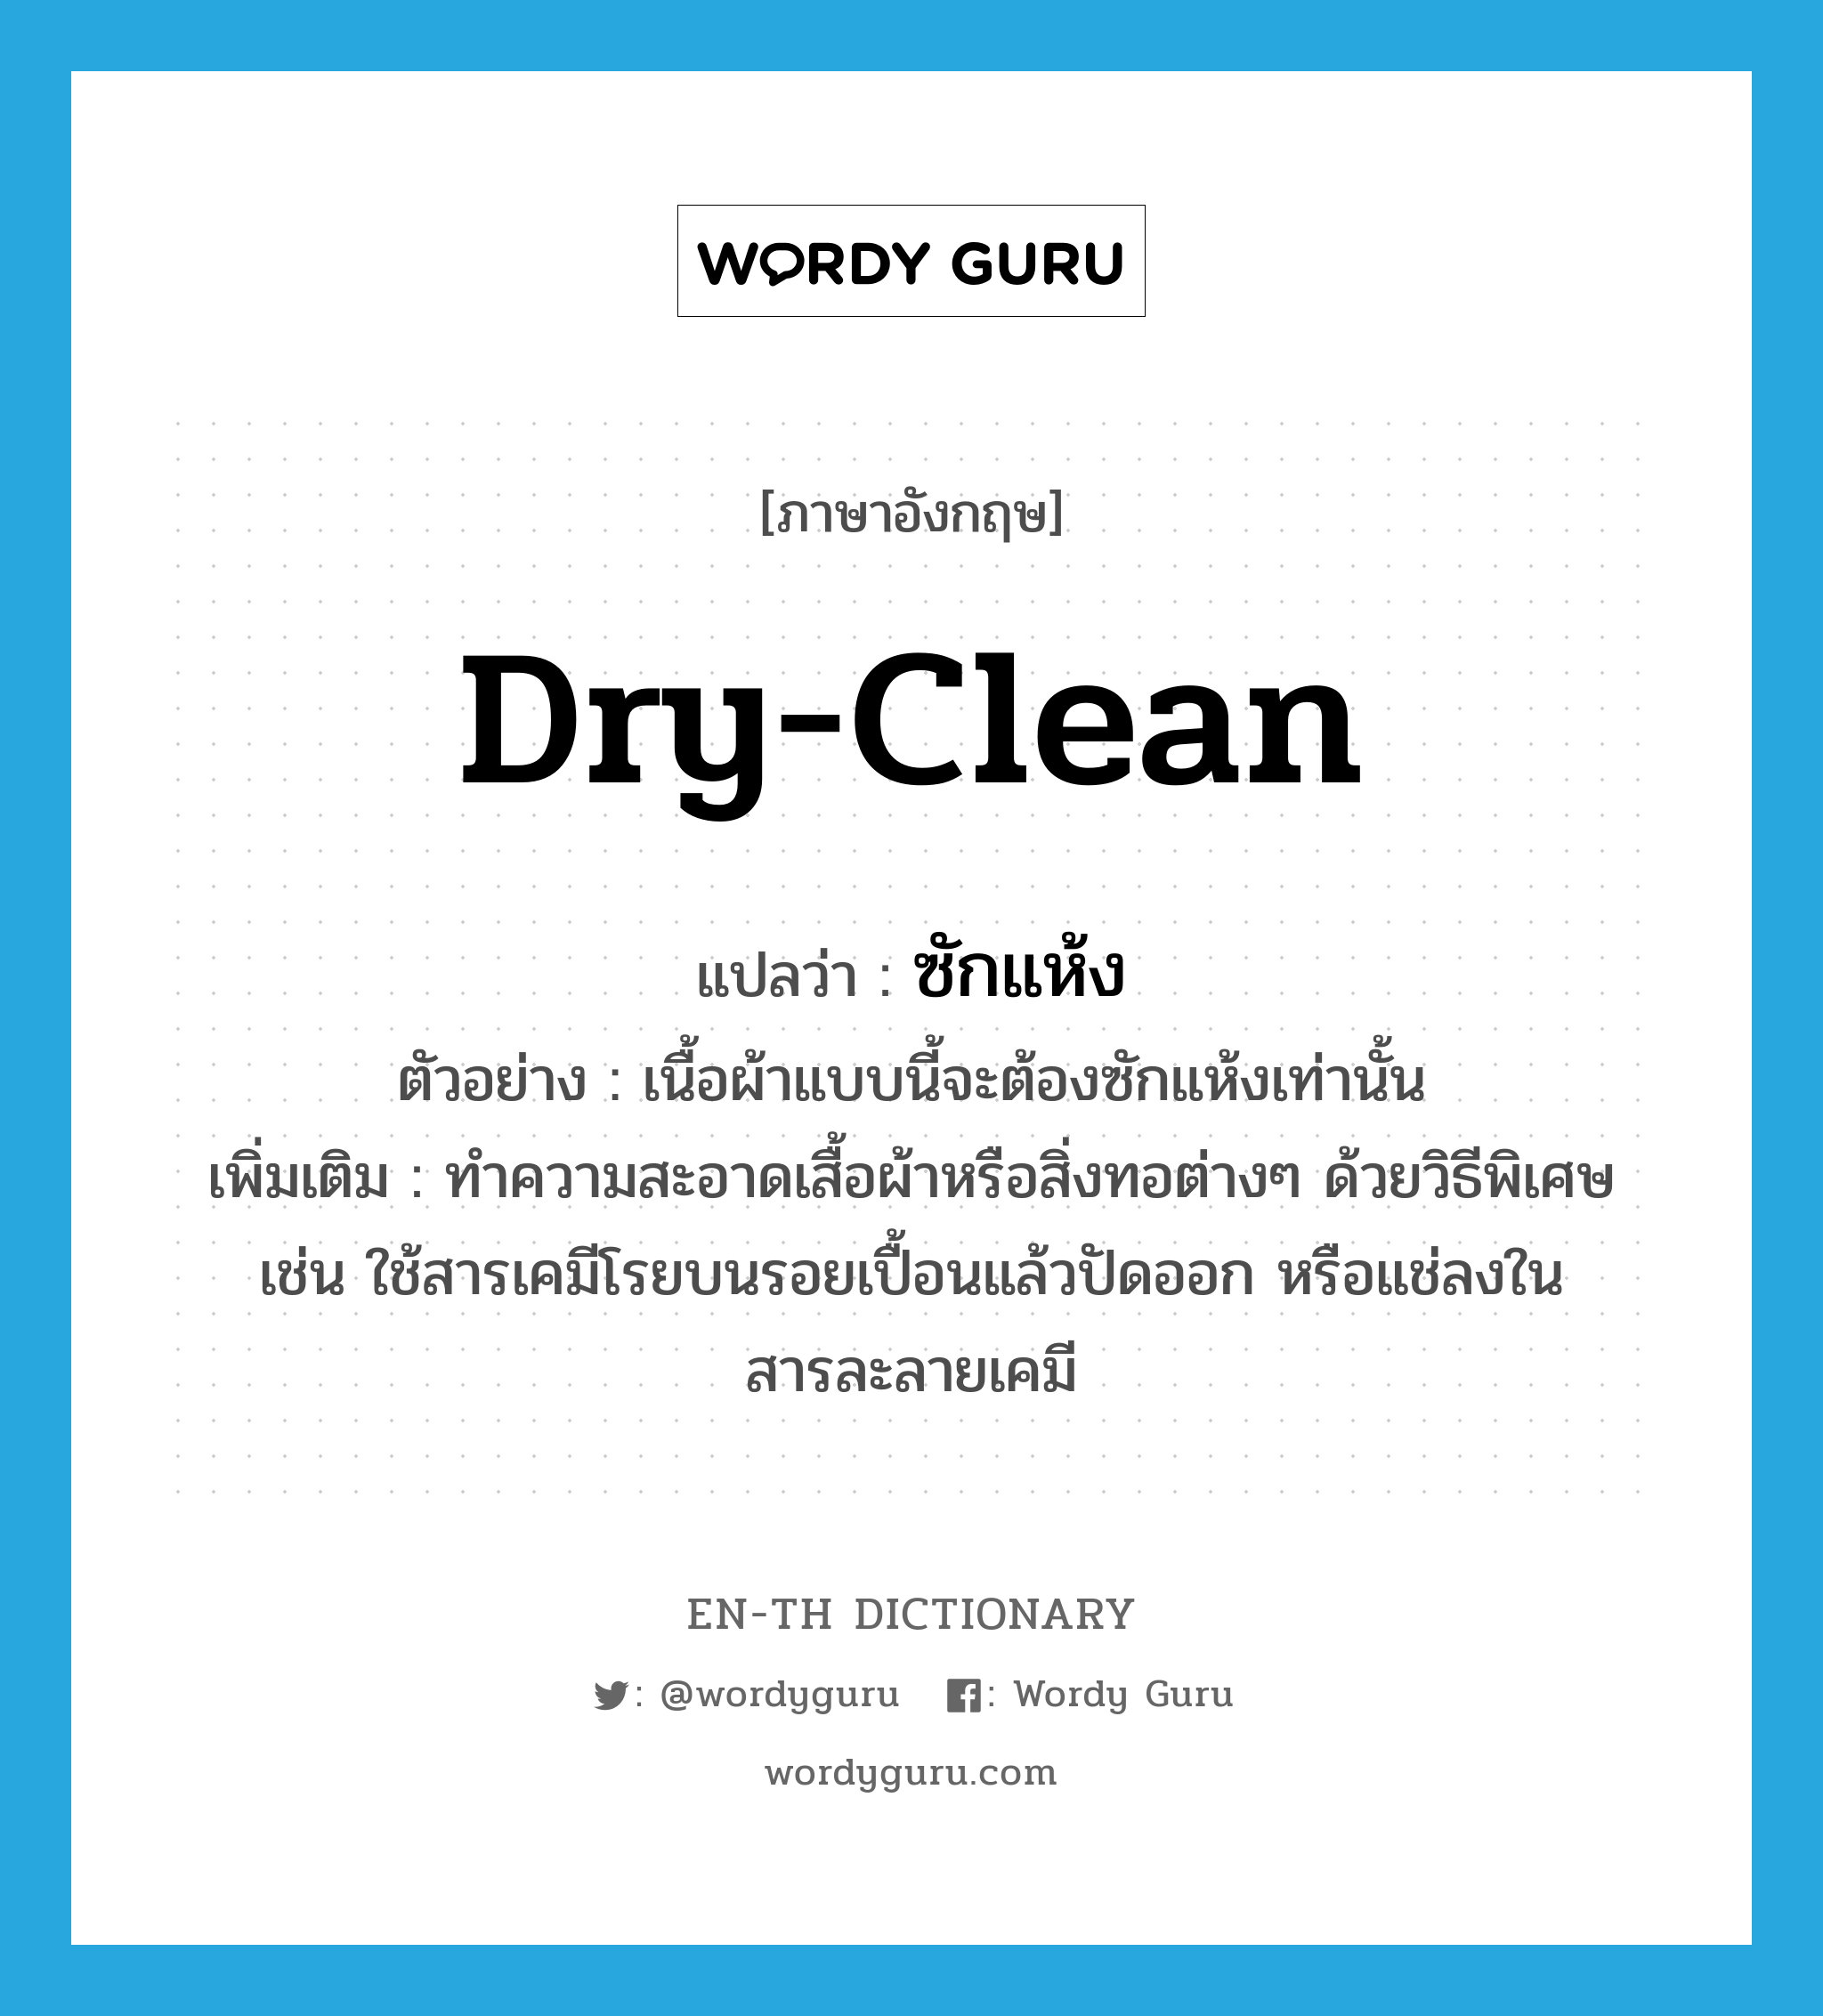 dry-clean แปลว่า?, คำศัพท์ภาษาอังกฤษ dry-clean แปลว่า ซักแห้ง ประเภท V ตัวอย่าง เนื้อผ้าแบบนี้จะต้องซักแห้งเท่านั้น เพิ่มเติม ทำความสะอาดเสื้อผ้าหรือสิ่งทอต่างๆ ด้วยวิธีพิเศษ เช่น ใช้สารเคมีโรยบนรอยเปื้อนแล้วปัดออก หรือแช่ลงในสารละลายเคมี หมวด V